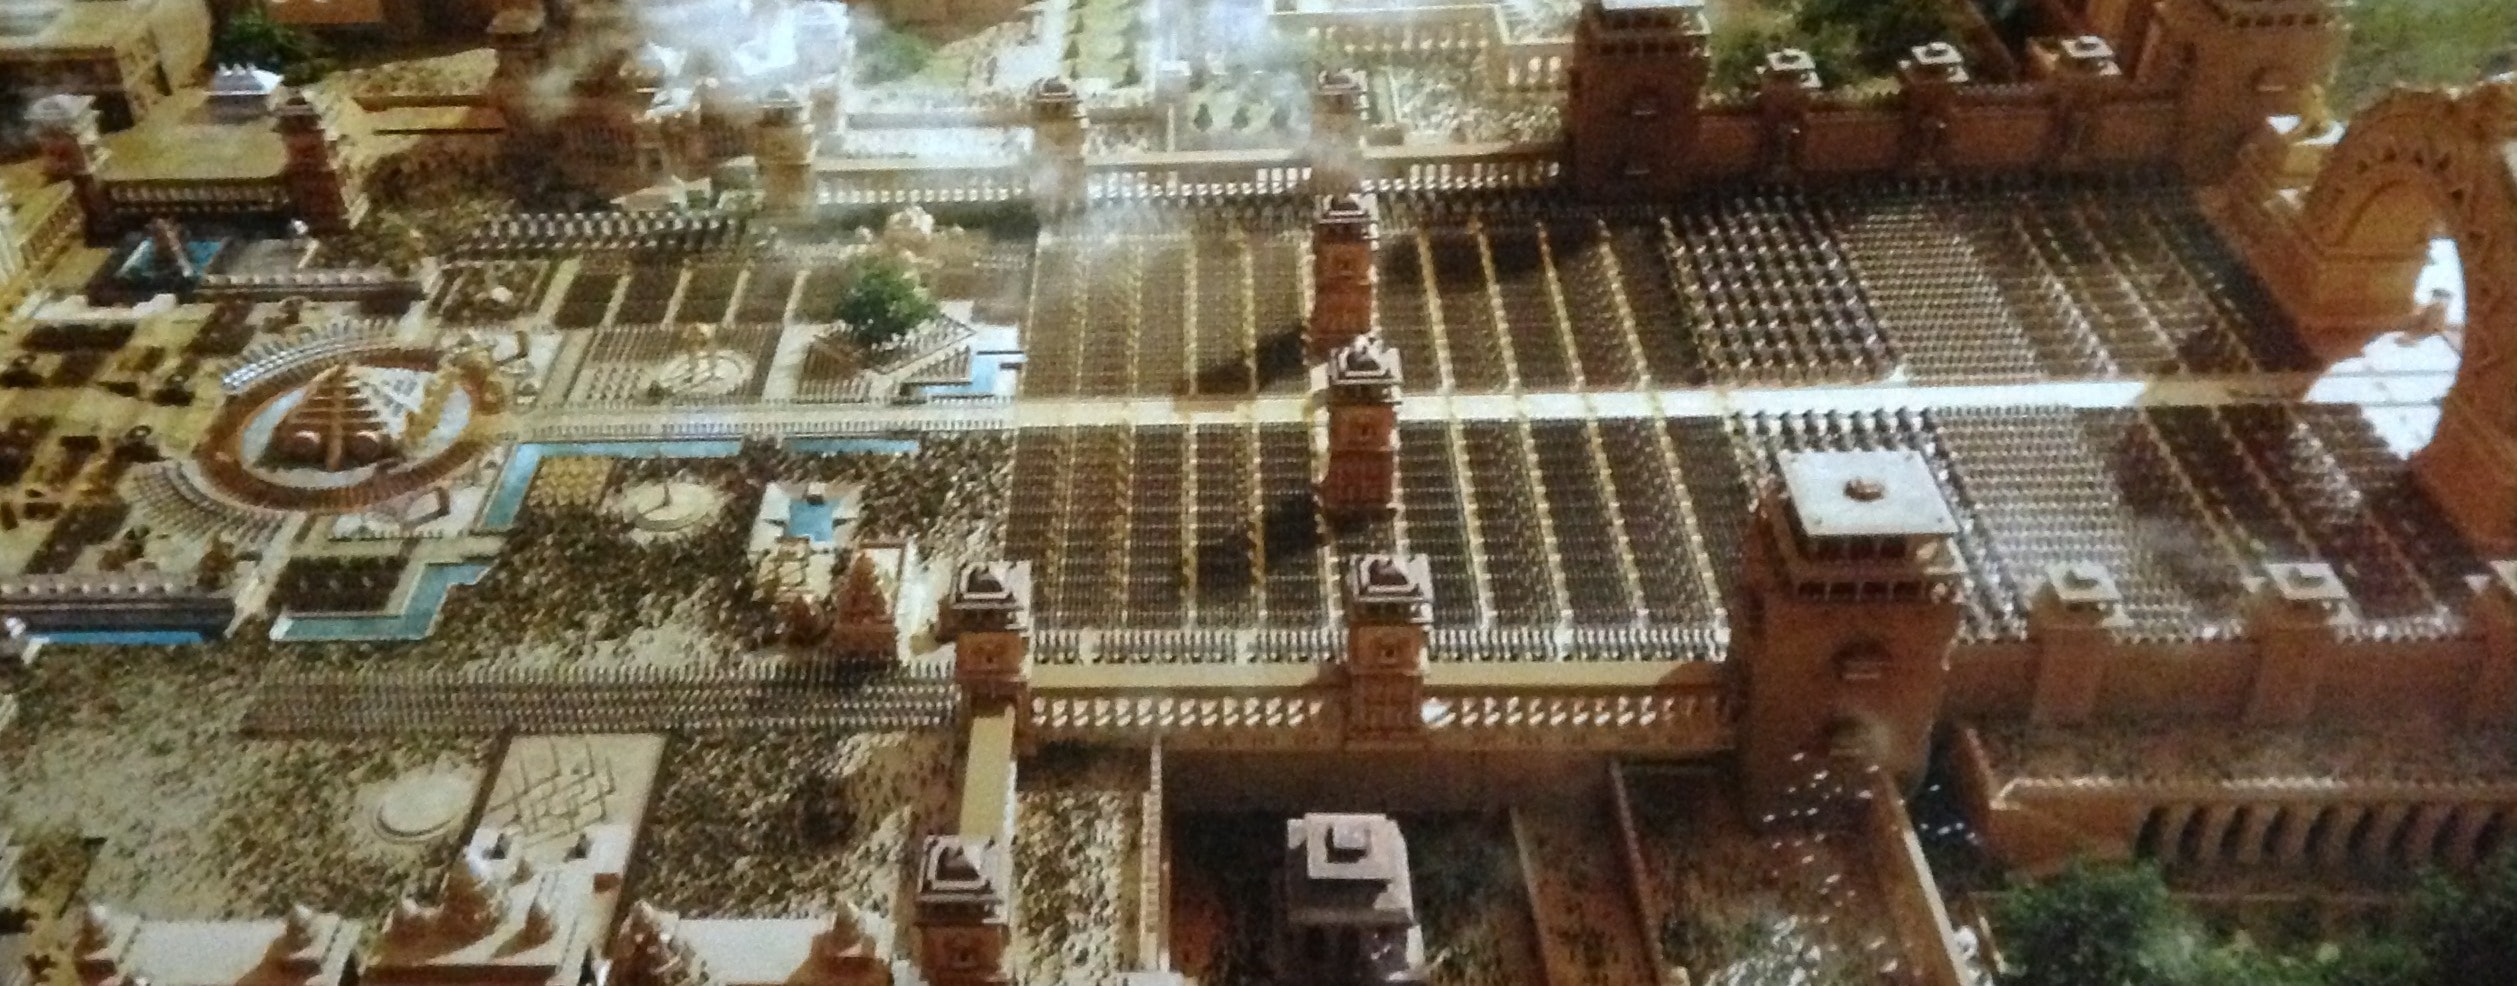 Bahubali palace Sets